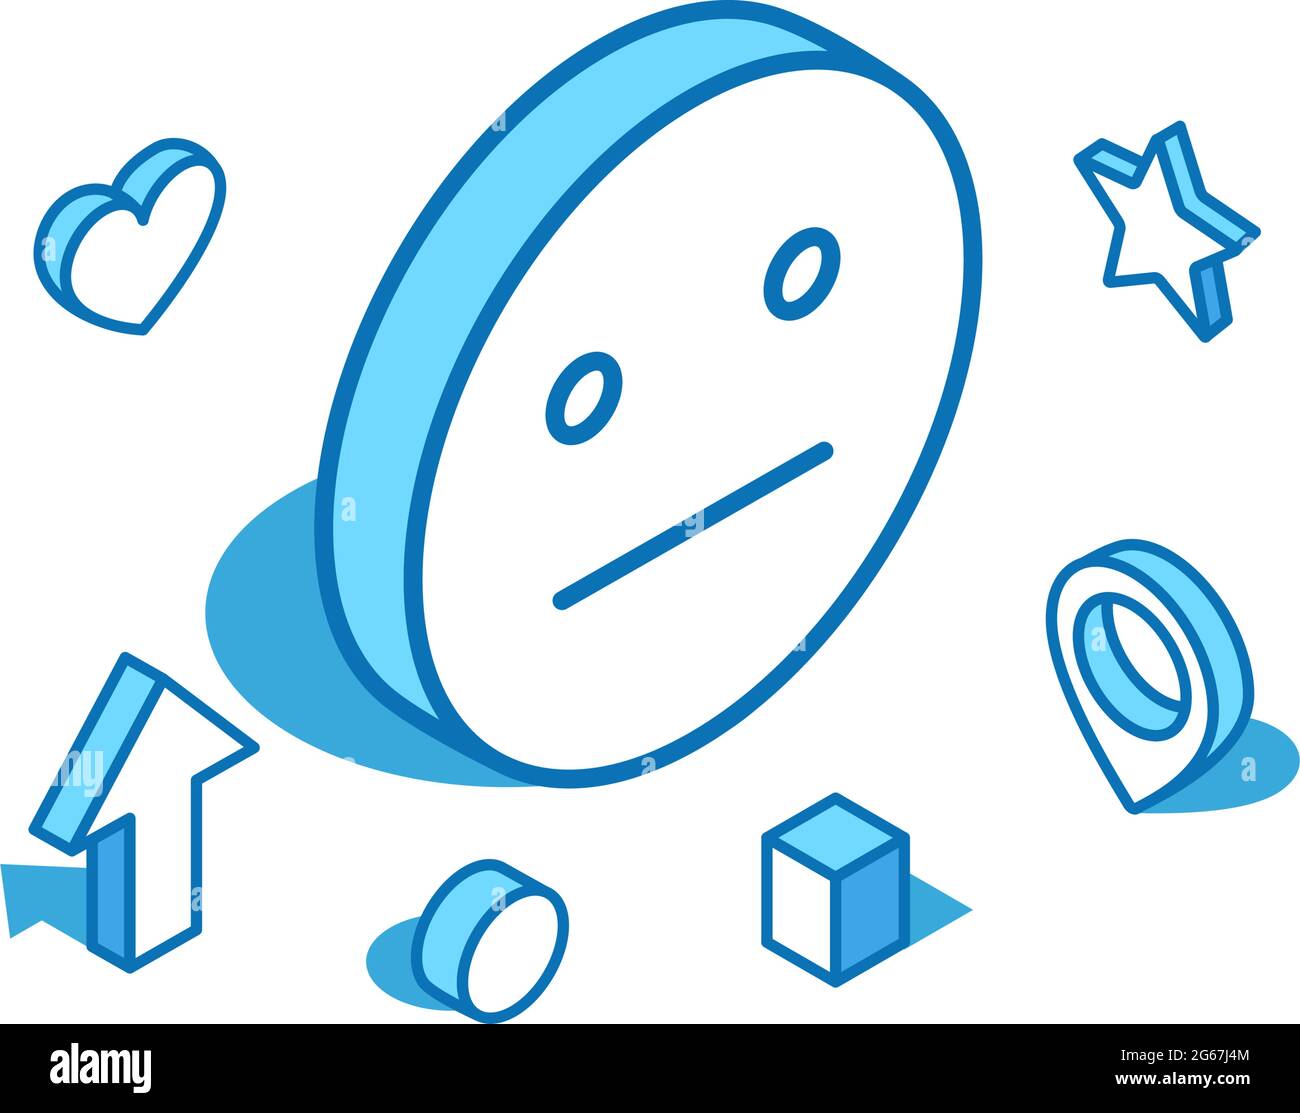 Emotionslose, isometrische Darstellung der blauen Linie des Emojis. Ausdruckslose, indifferente 3D-Banner-Vorlage. Stock Vektor